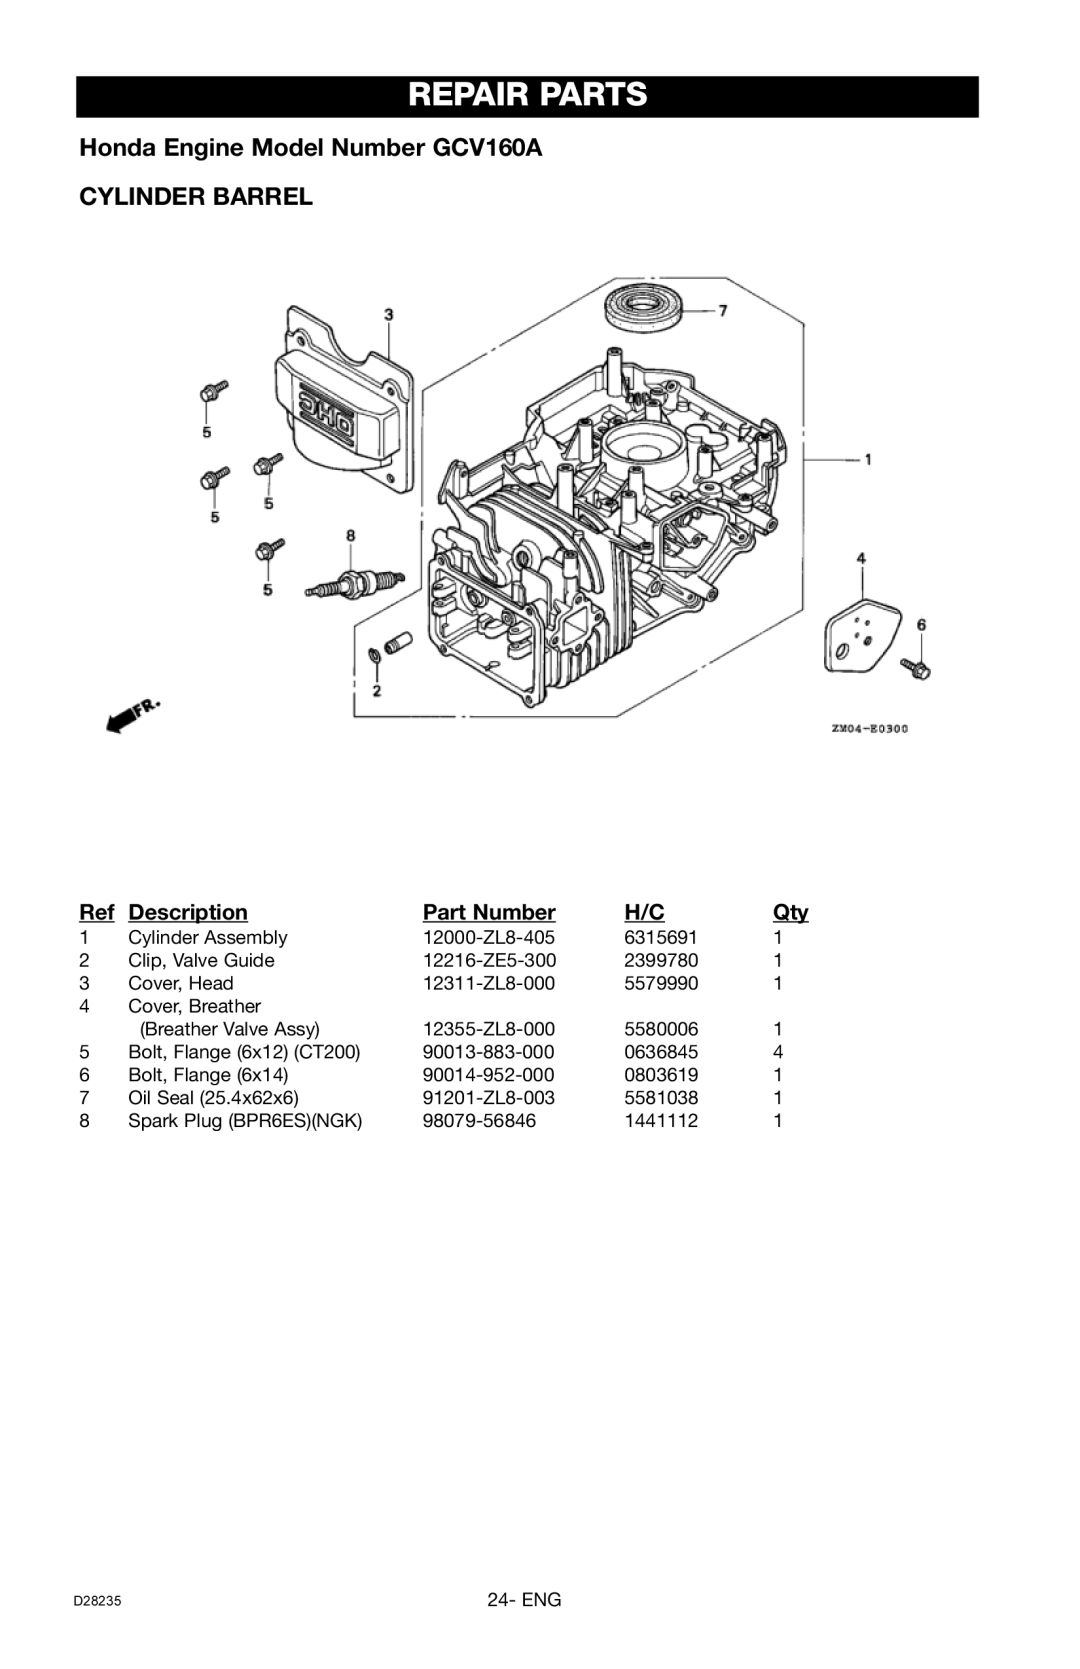 Craftsman D28235, 919.672241 Repair Parts, Honda Engine Model Number GCV160A CYLINDER BARREL, Description, Part Number 